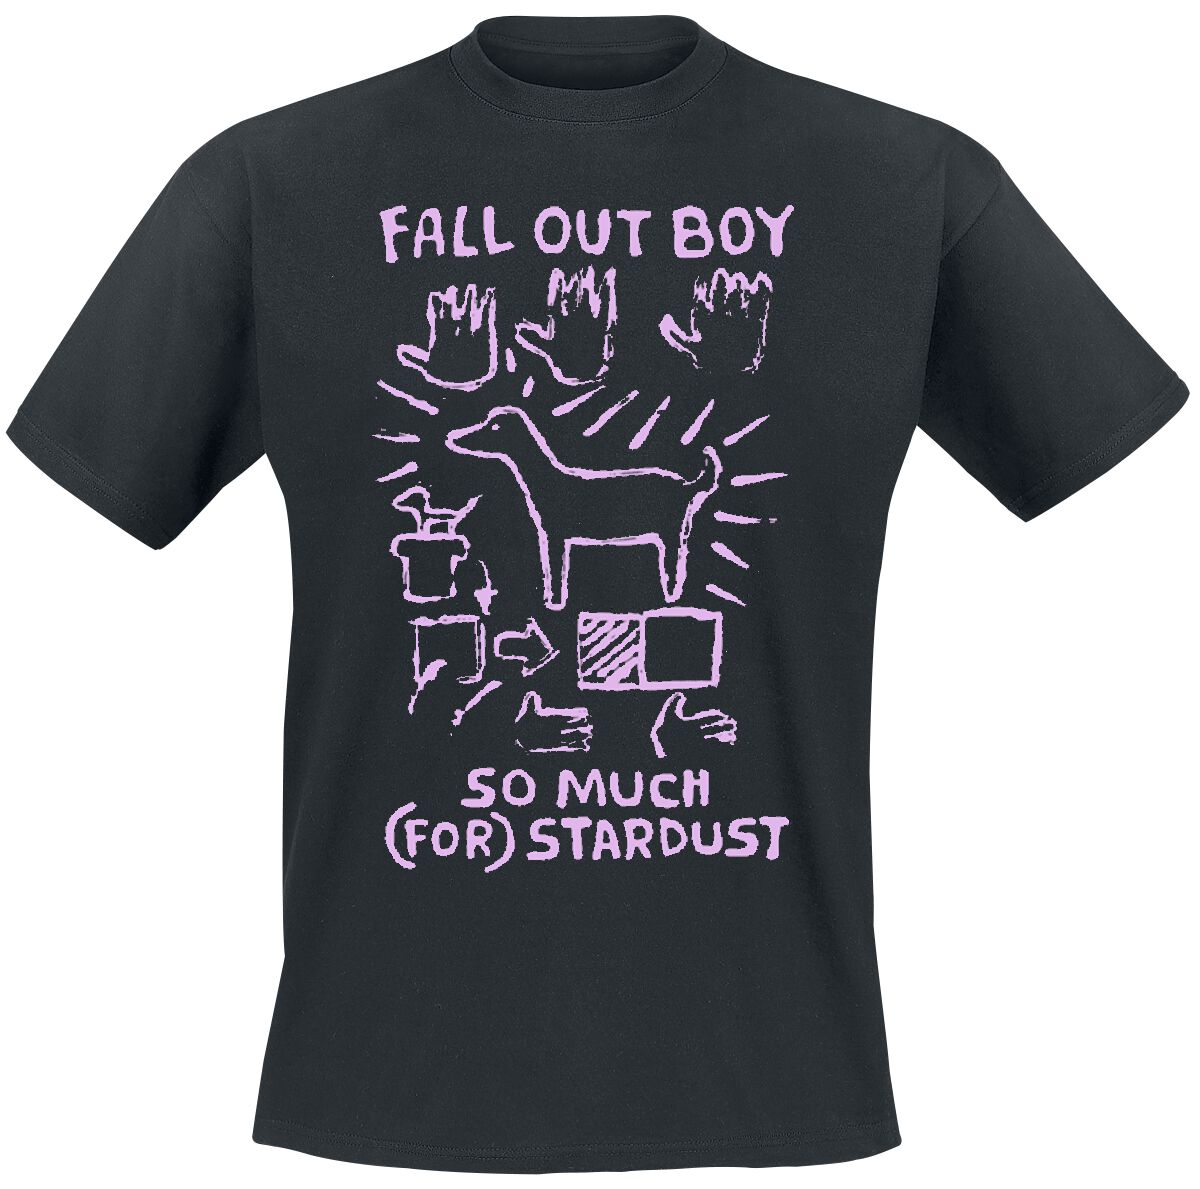 Fall Out Boy T-Shirt - Pink Dog So Much Stardust - S bis L - für Männer - Größe M - schwarz  - Lizenziertes Merchandise!